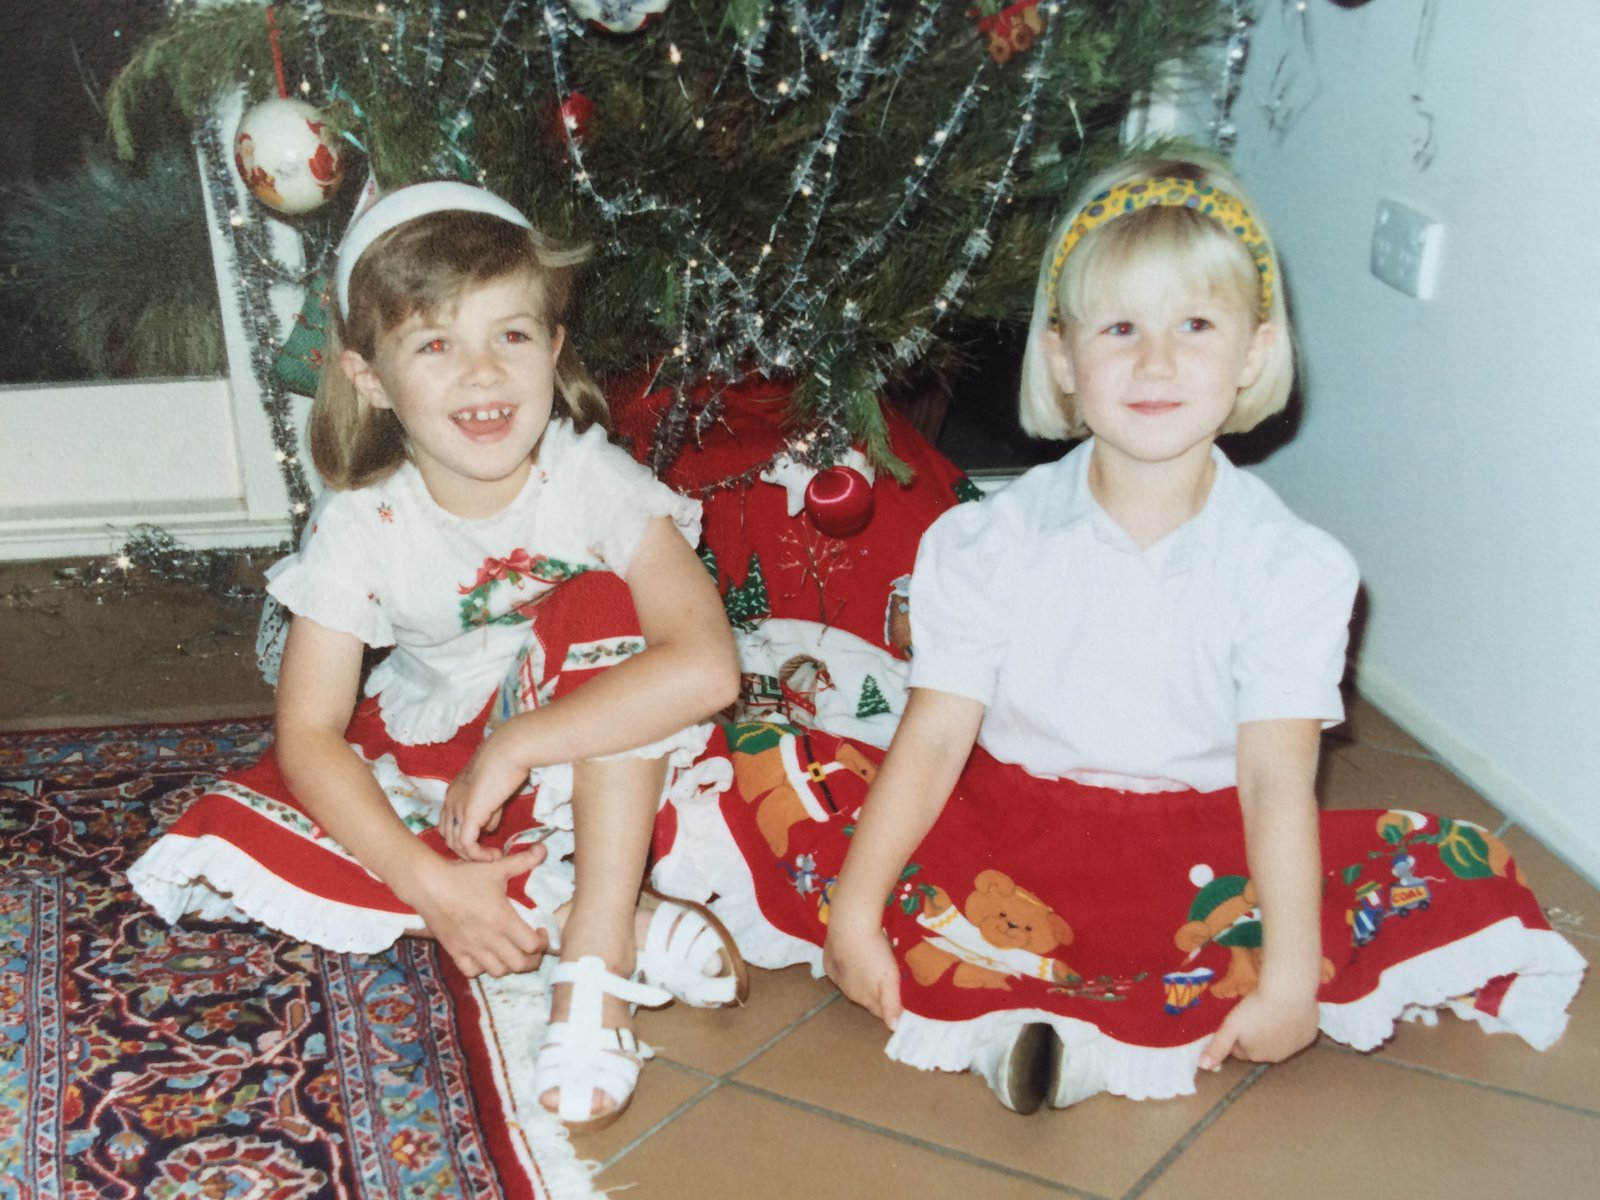 Zwei junge Mädchen posieren in ihren Weihnachtsoutfits vor einem geschmückten Tannenbaum.